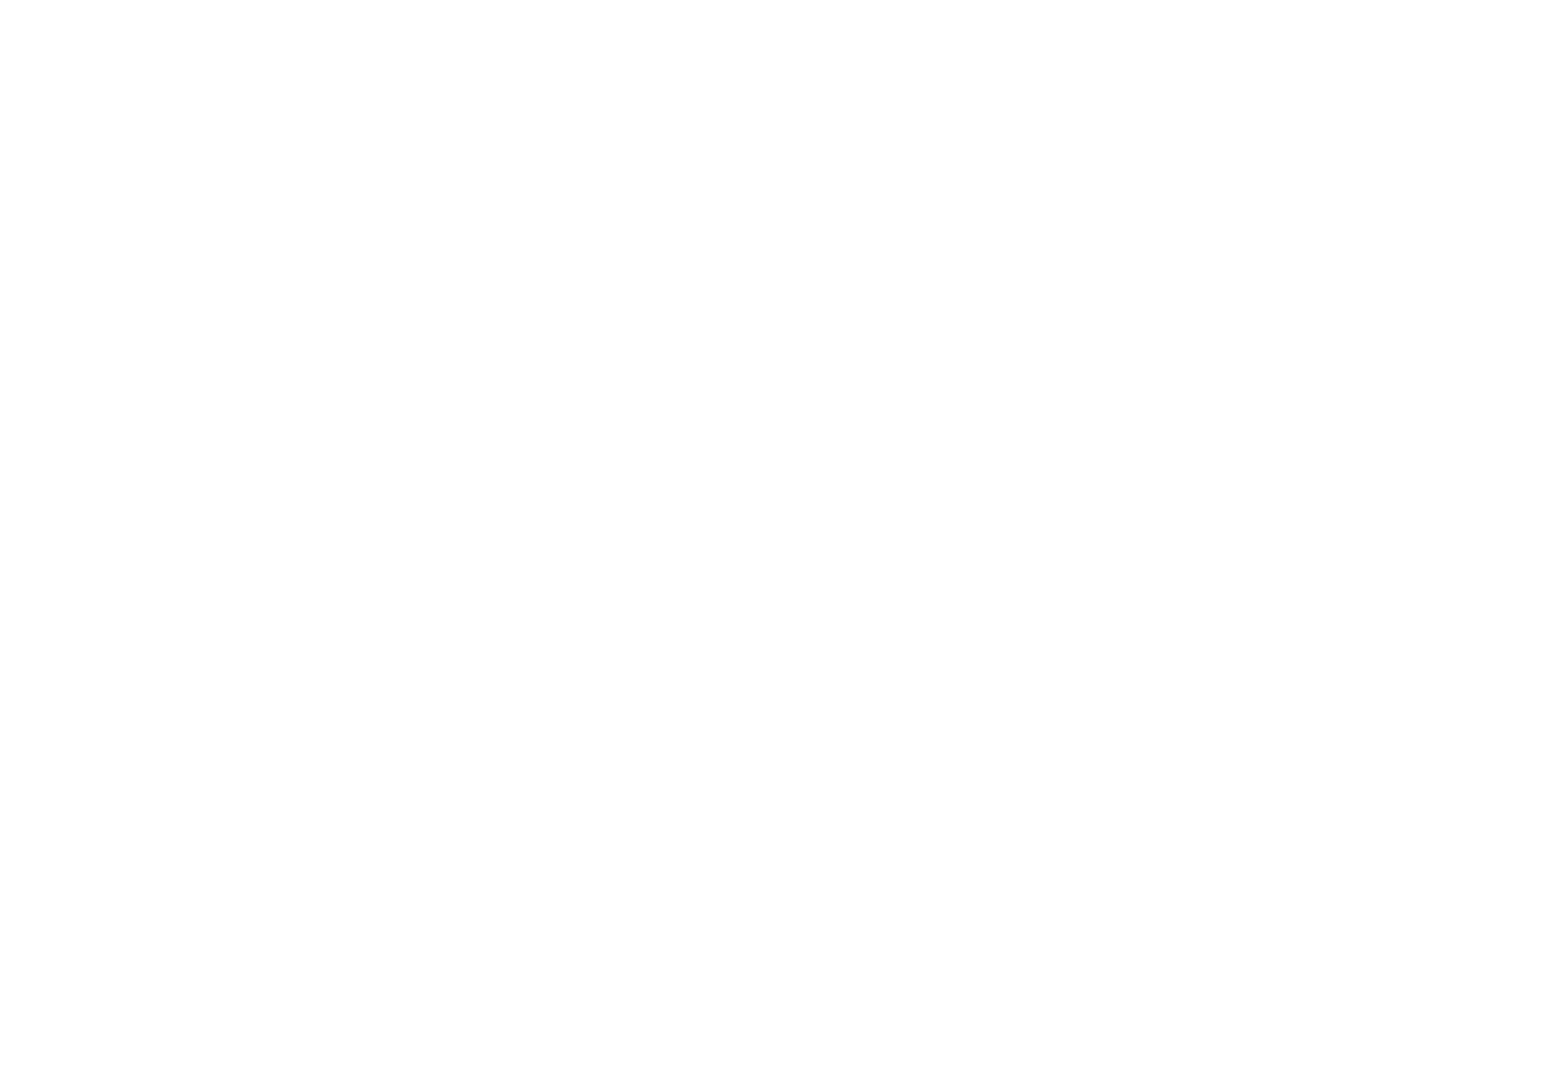 Shui On Land logo large for dark backgrounds (transparent PNG)